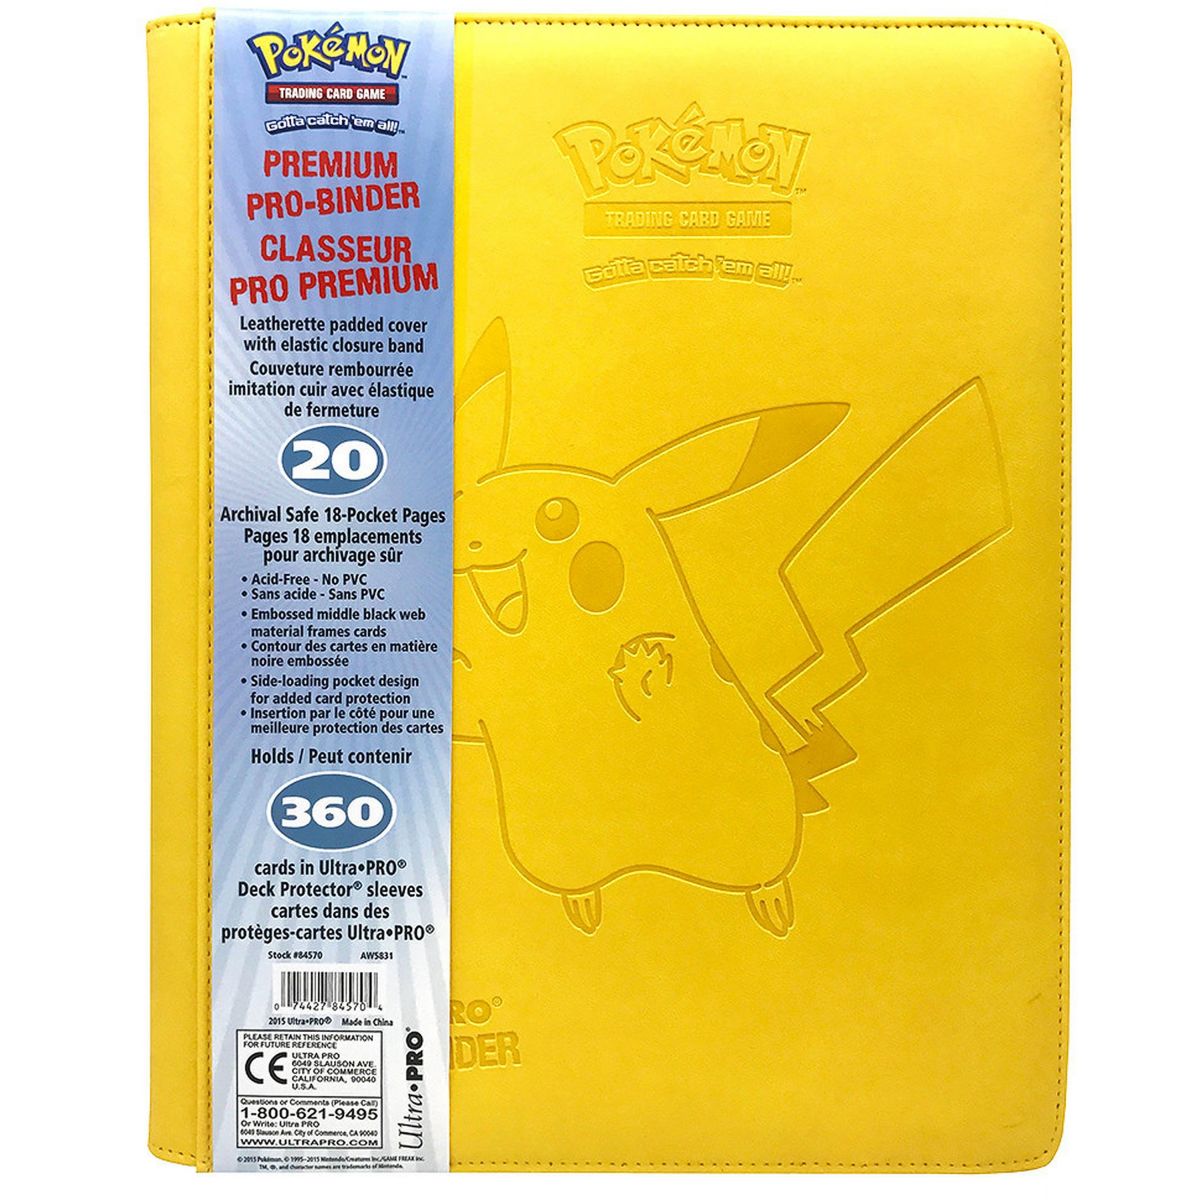 Item Pro Binder Premium 9 Cases - Pikachu